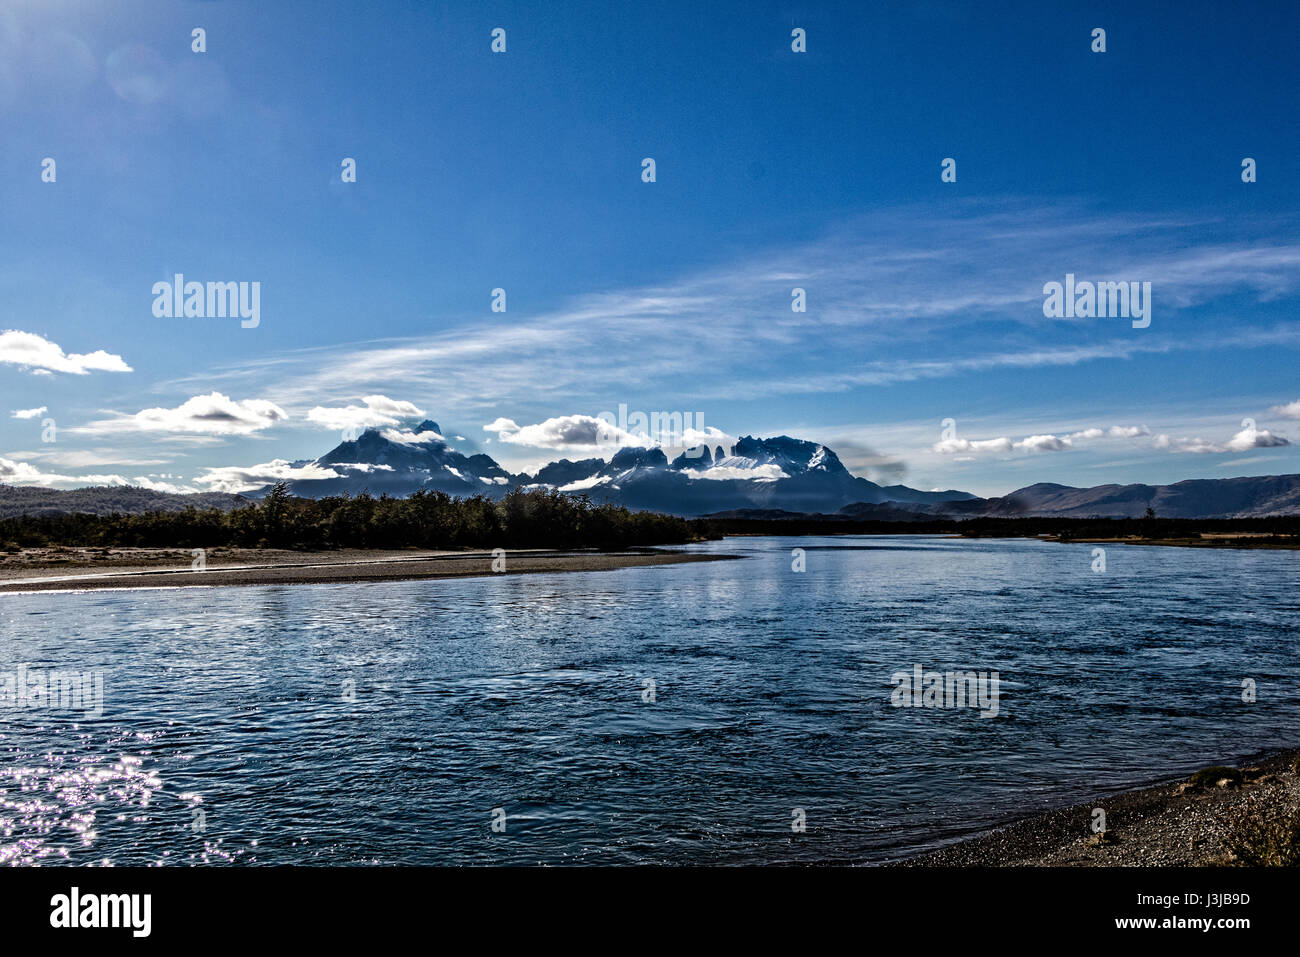 Serrano fiume withTorres del Paine cime sullo sfondo Foto Stock